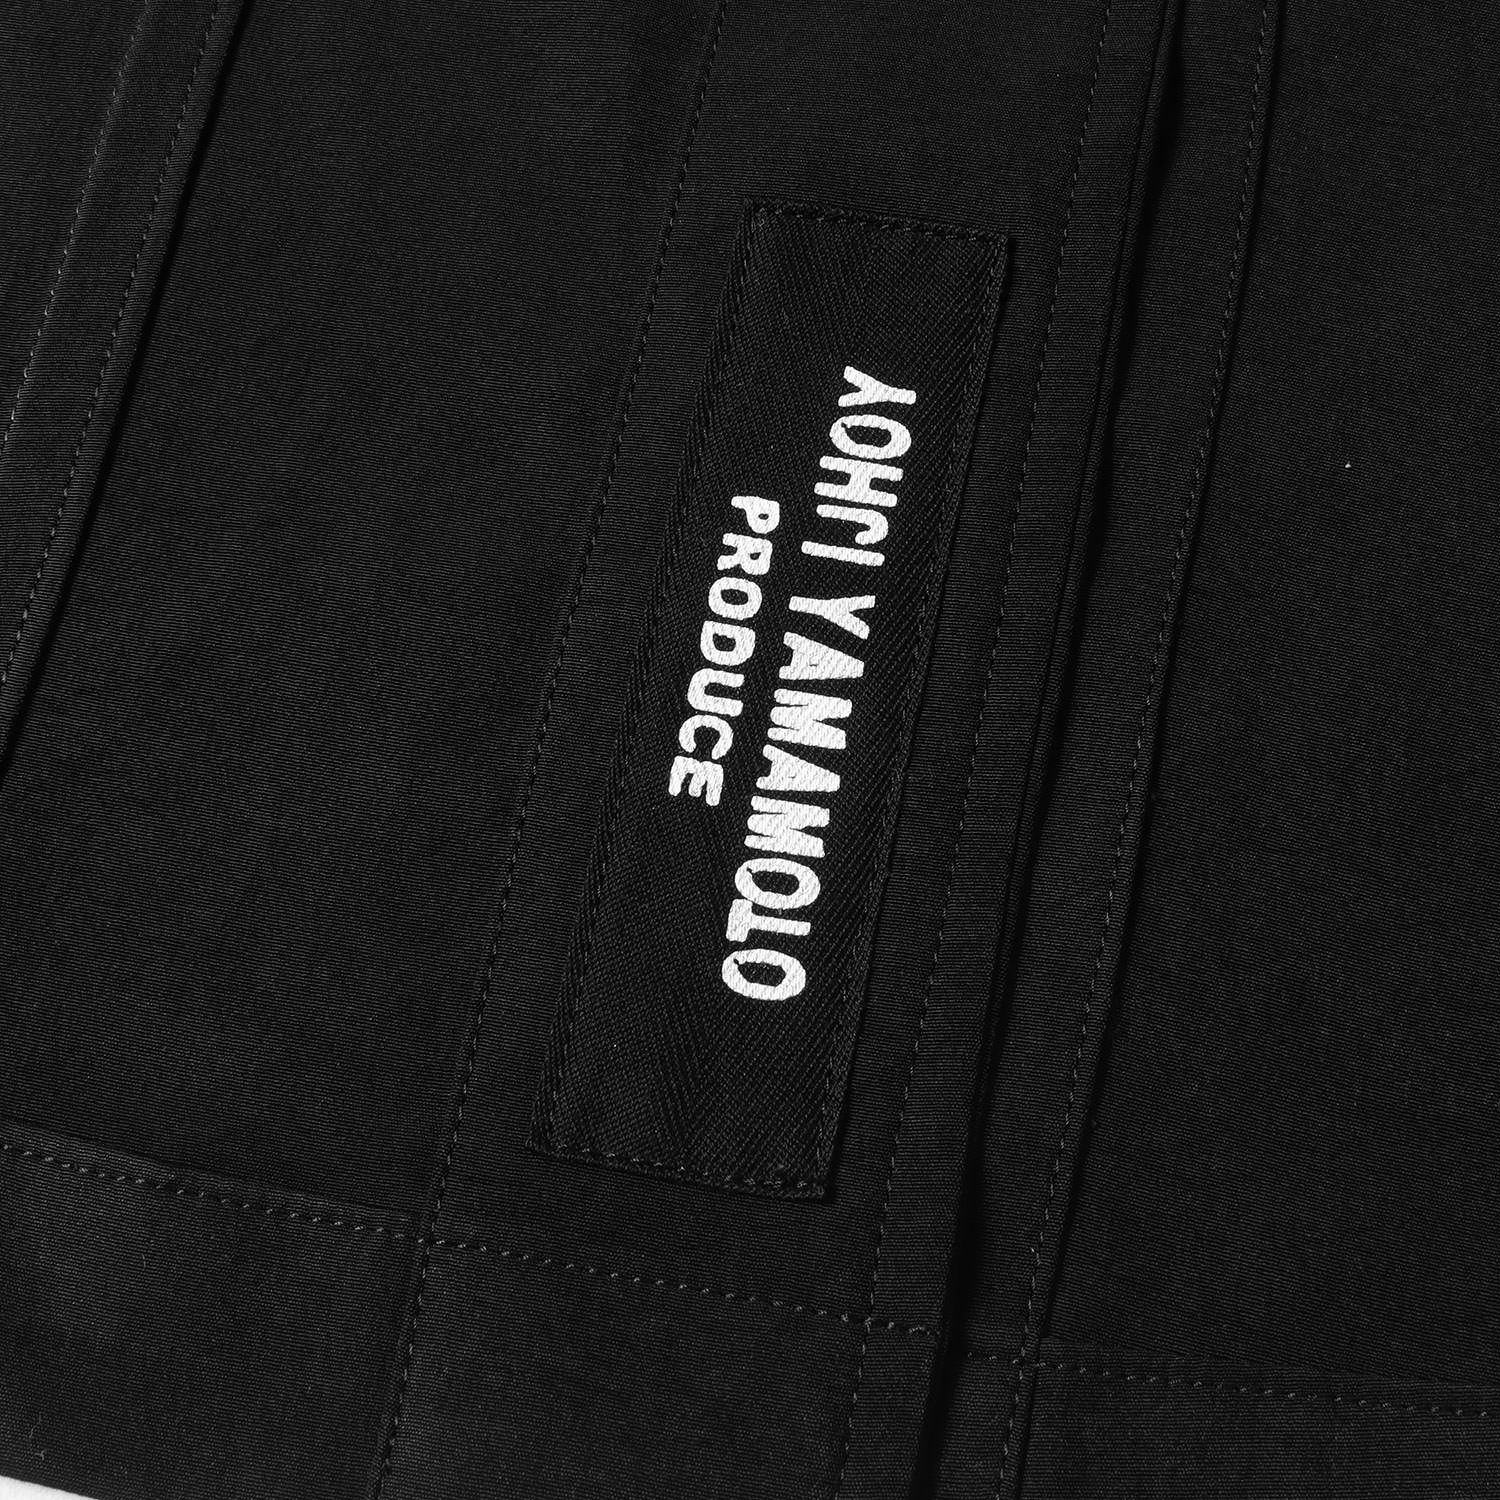 Yohji Yamamoto(Ys) ヨウジヤマモト ジャケット サイズ:2 タキシード デザイン HG-J08-500 22SS POUR HOMME プールオム ブラック 黒 日本製 アウター コート ブレザー 【メンズ】